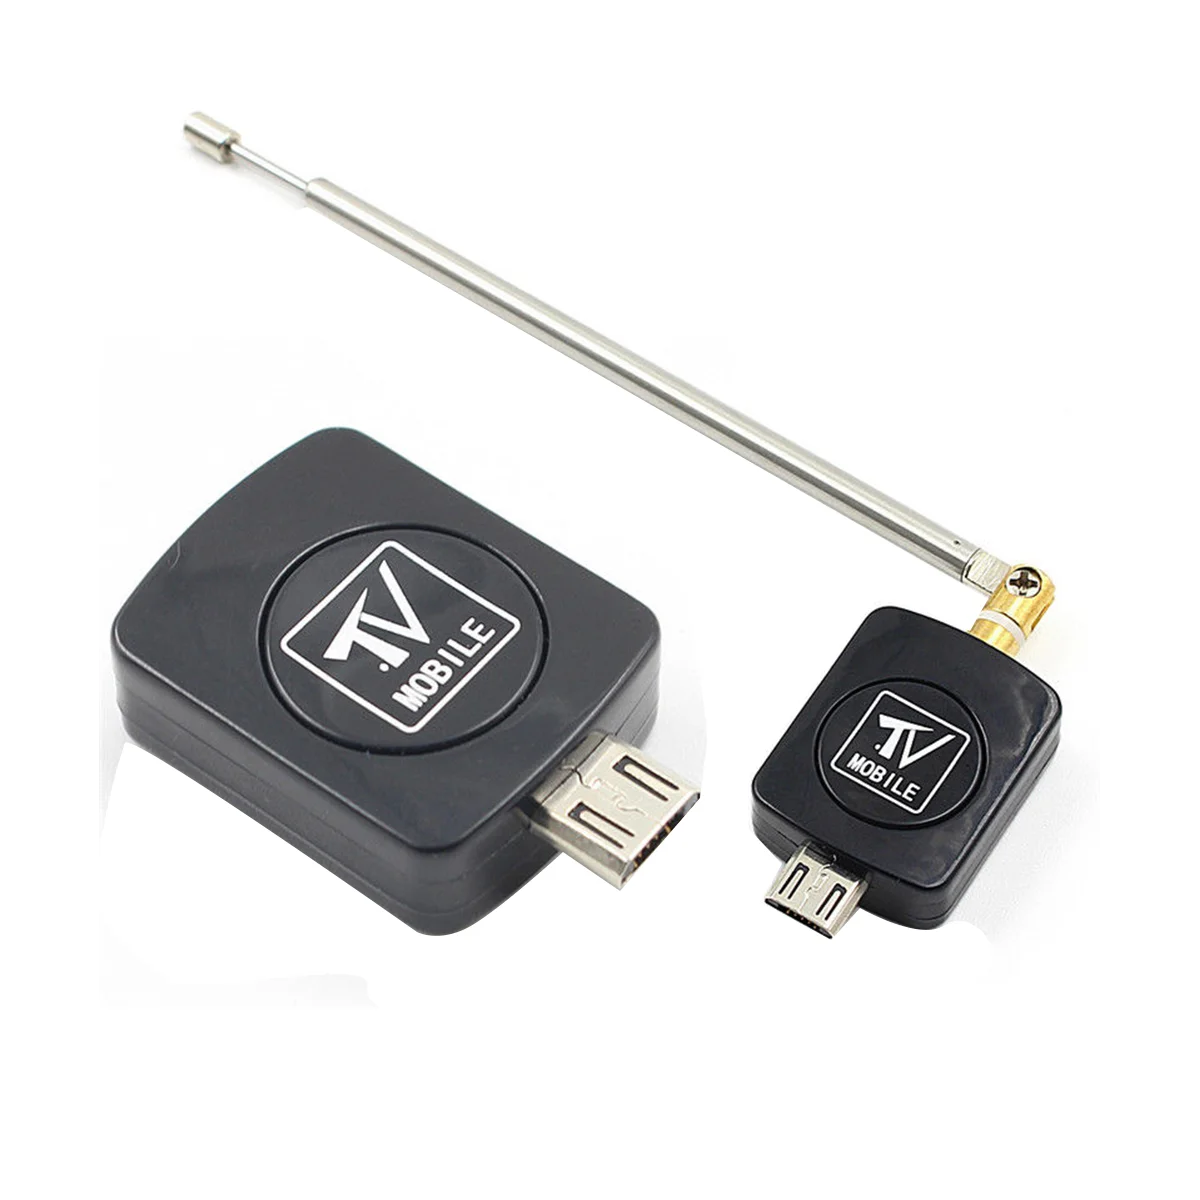 Mini USB DVB-T טיונר טלוויזיה מקלט דונגל/אנטנה DVB-T HD דיגיטלי נייד טלוויזיה HDTV הלוויין עבור טלפון אנדרואיד - 4